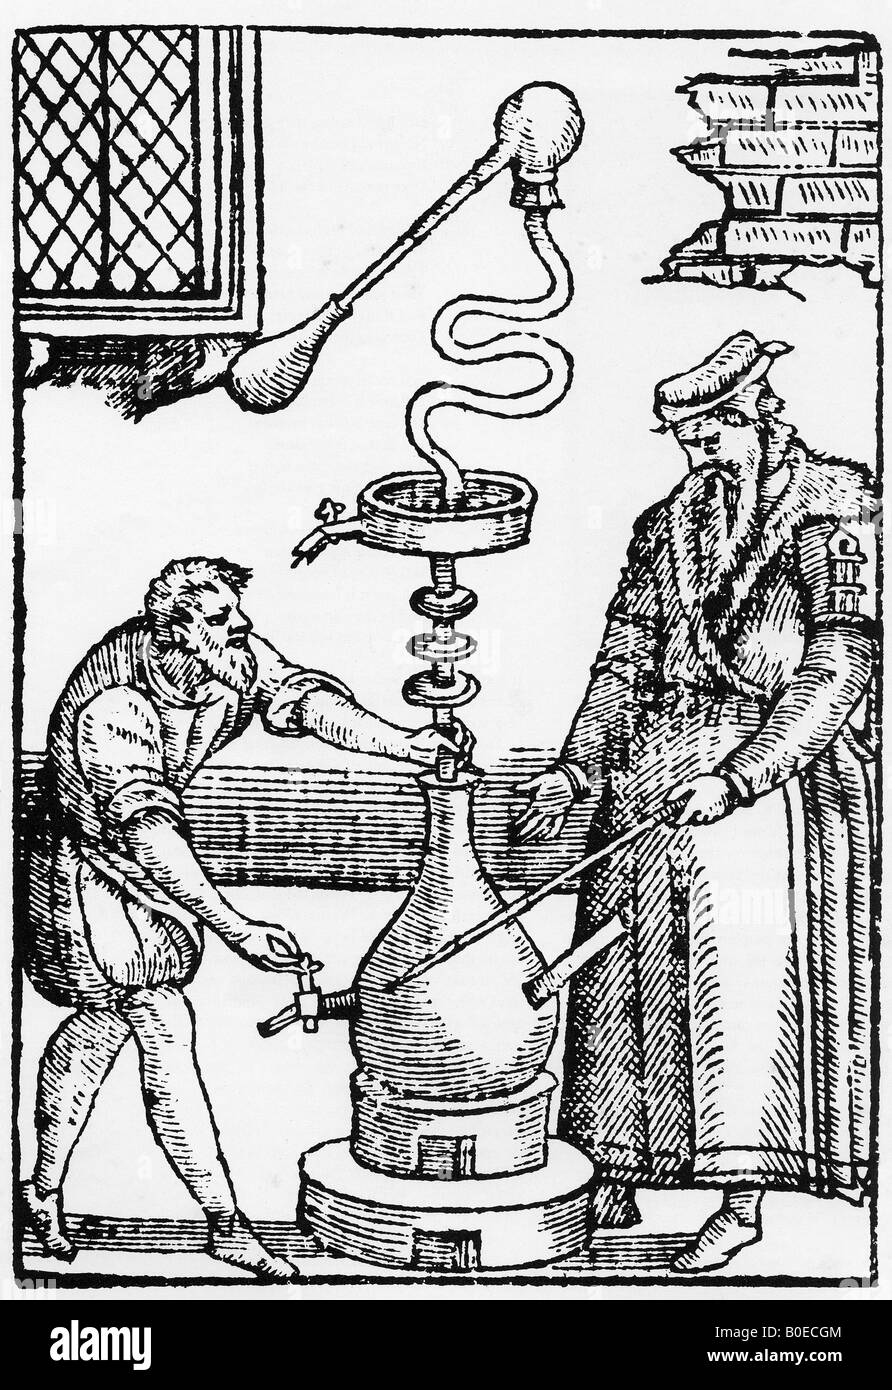 L'alchimie gravure élisabéthain montrant deux alchimistes essaie de distiller l'imaginé élixir de vie Banque D'Images